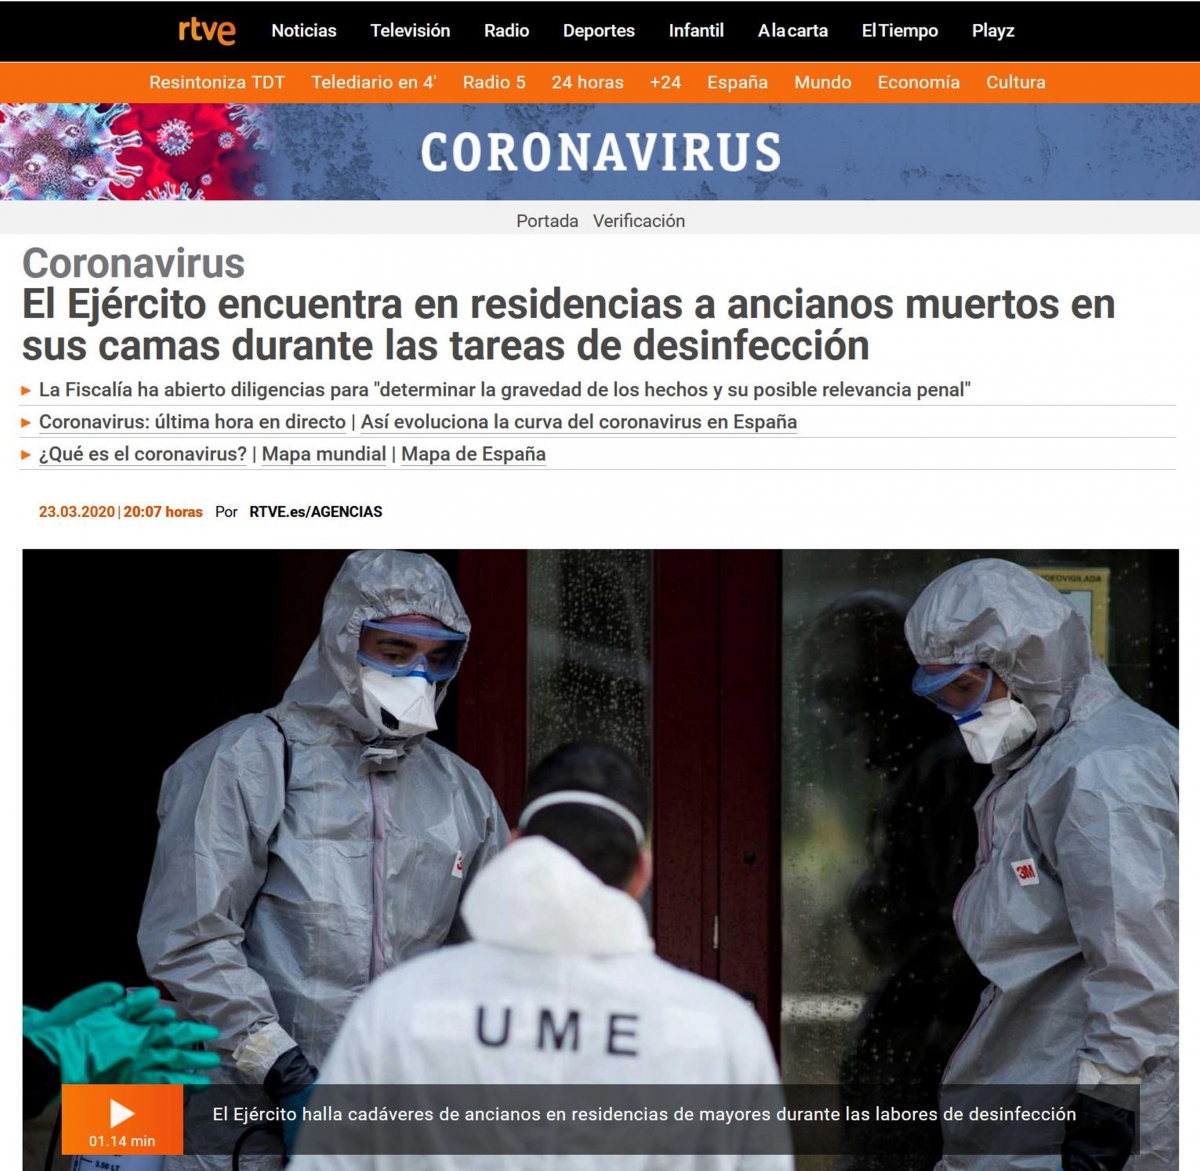 Web de RTVE. El Ejrcito encuentra en Residencias a ancianos muertos en sus camas durante las tareas de desinfeccin. (CORONAVIRUS 23- 03- 2020)